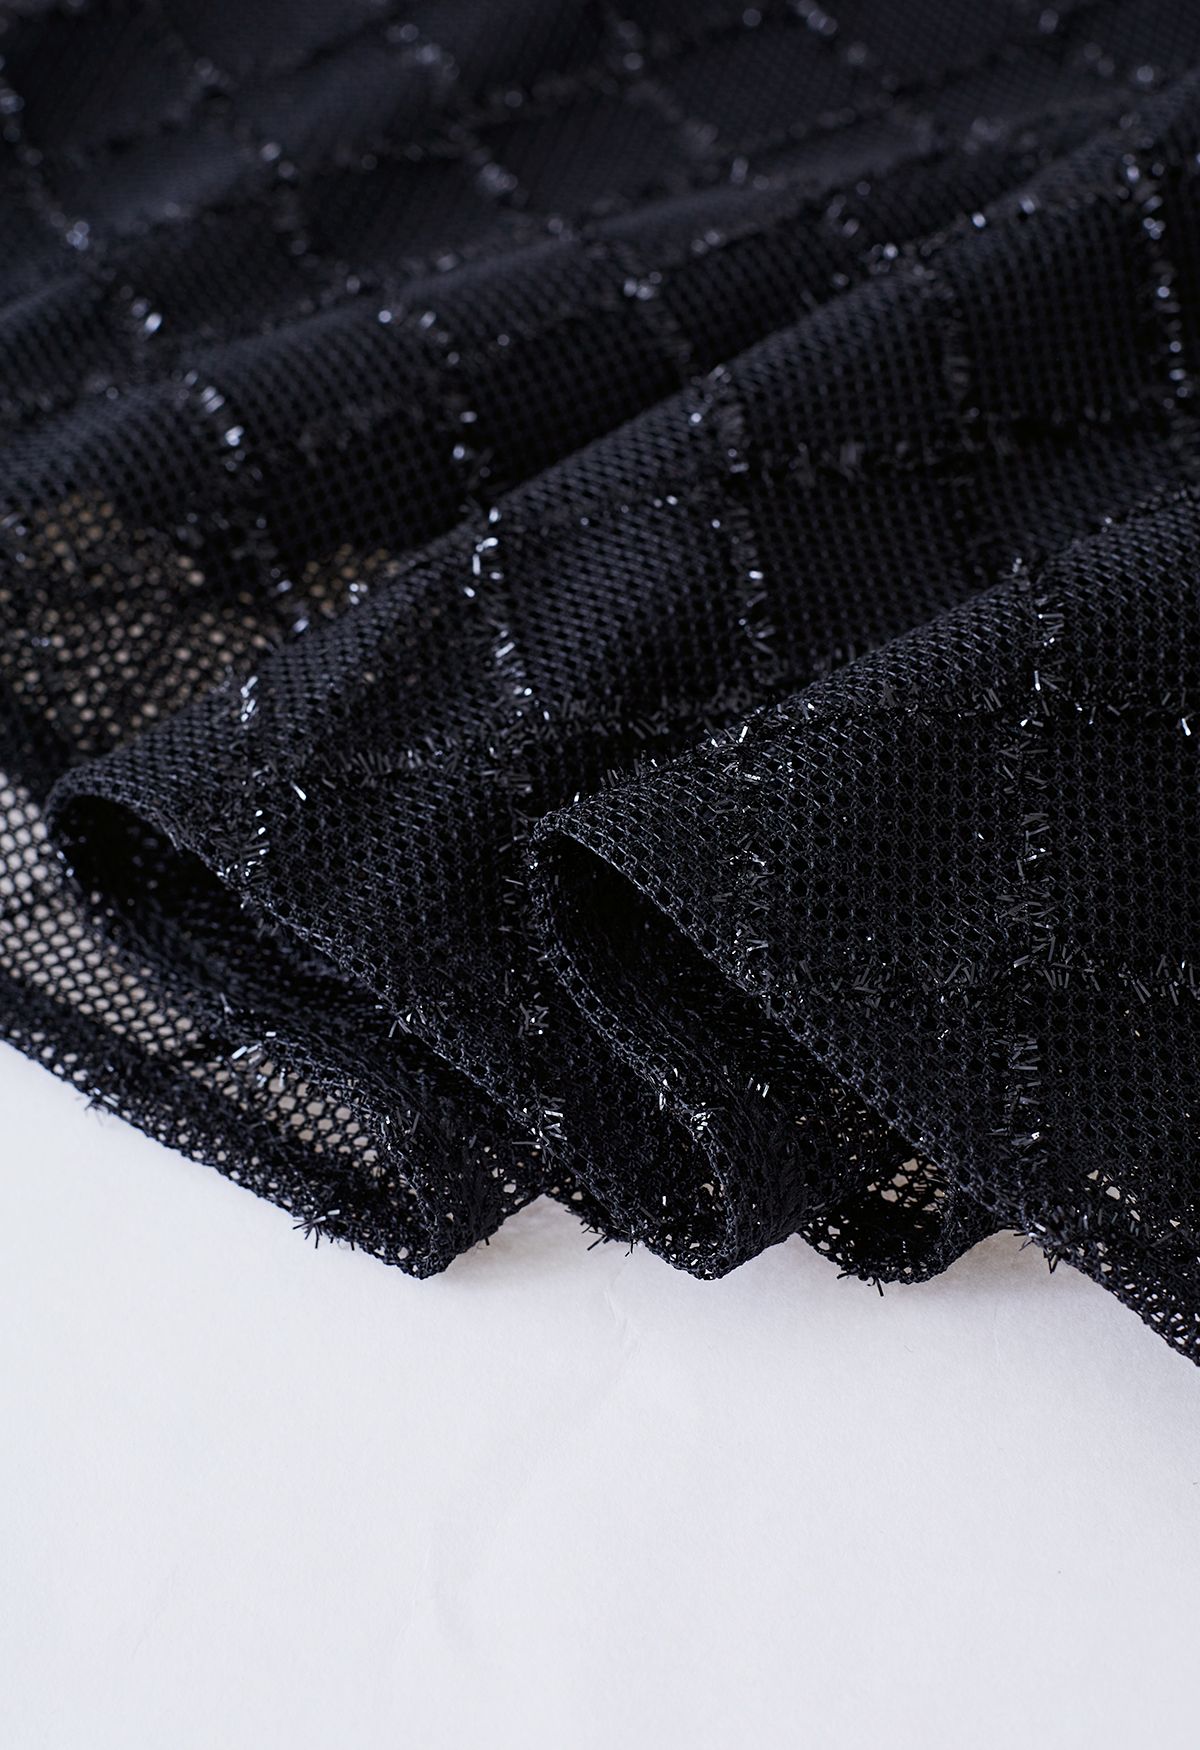 Shimmer Fringed Diamond Net Skirt in Black